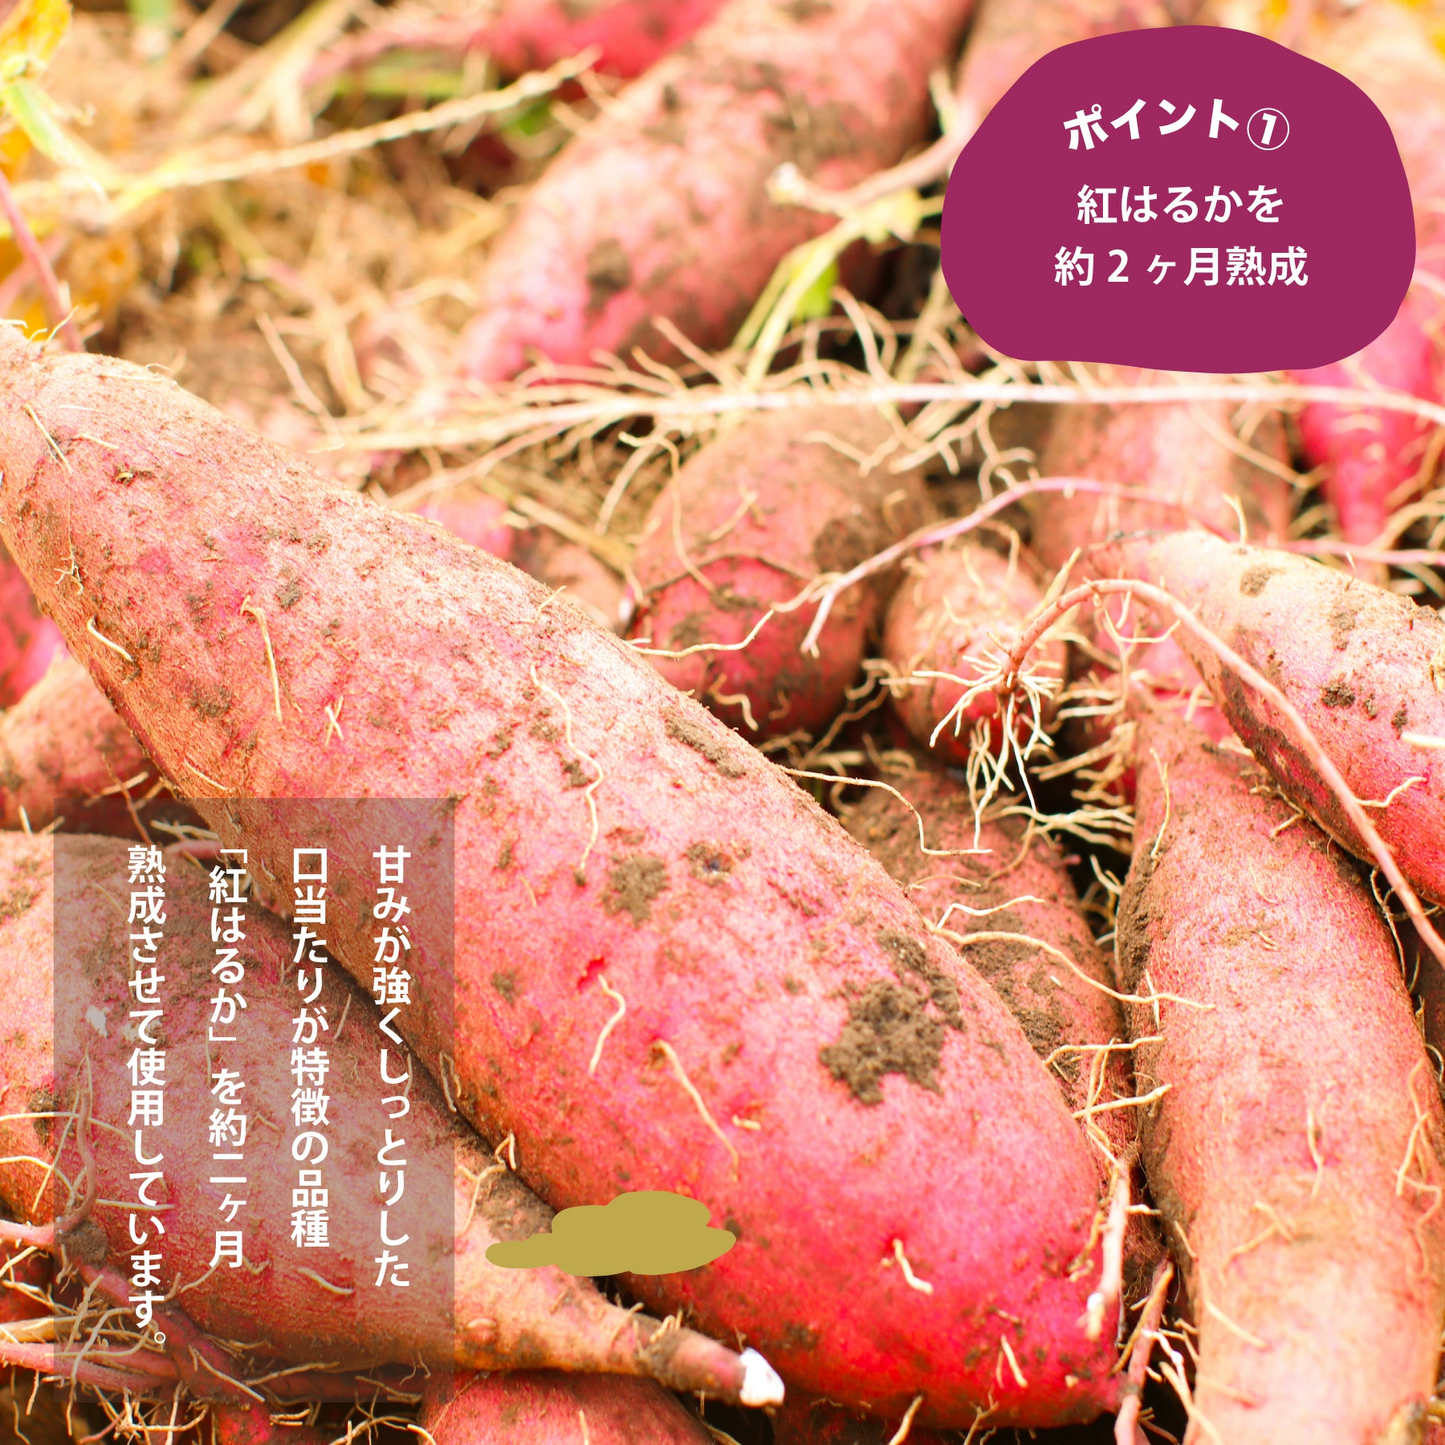 鹿児島県産熟成紅はるか使用 紅はるか丸干し 干し芋 220g×2